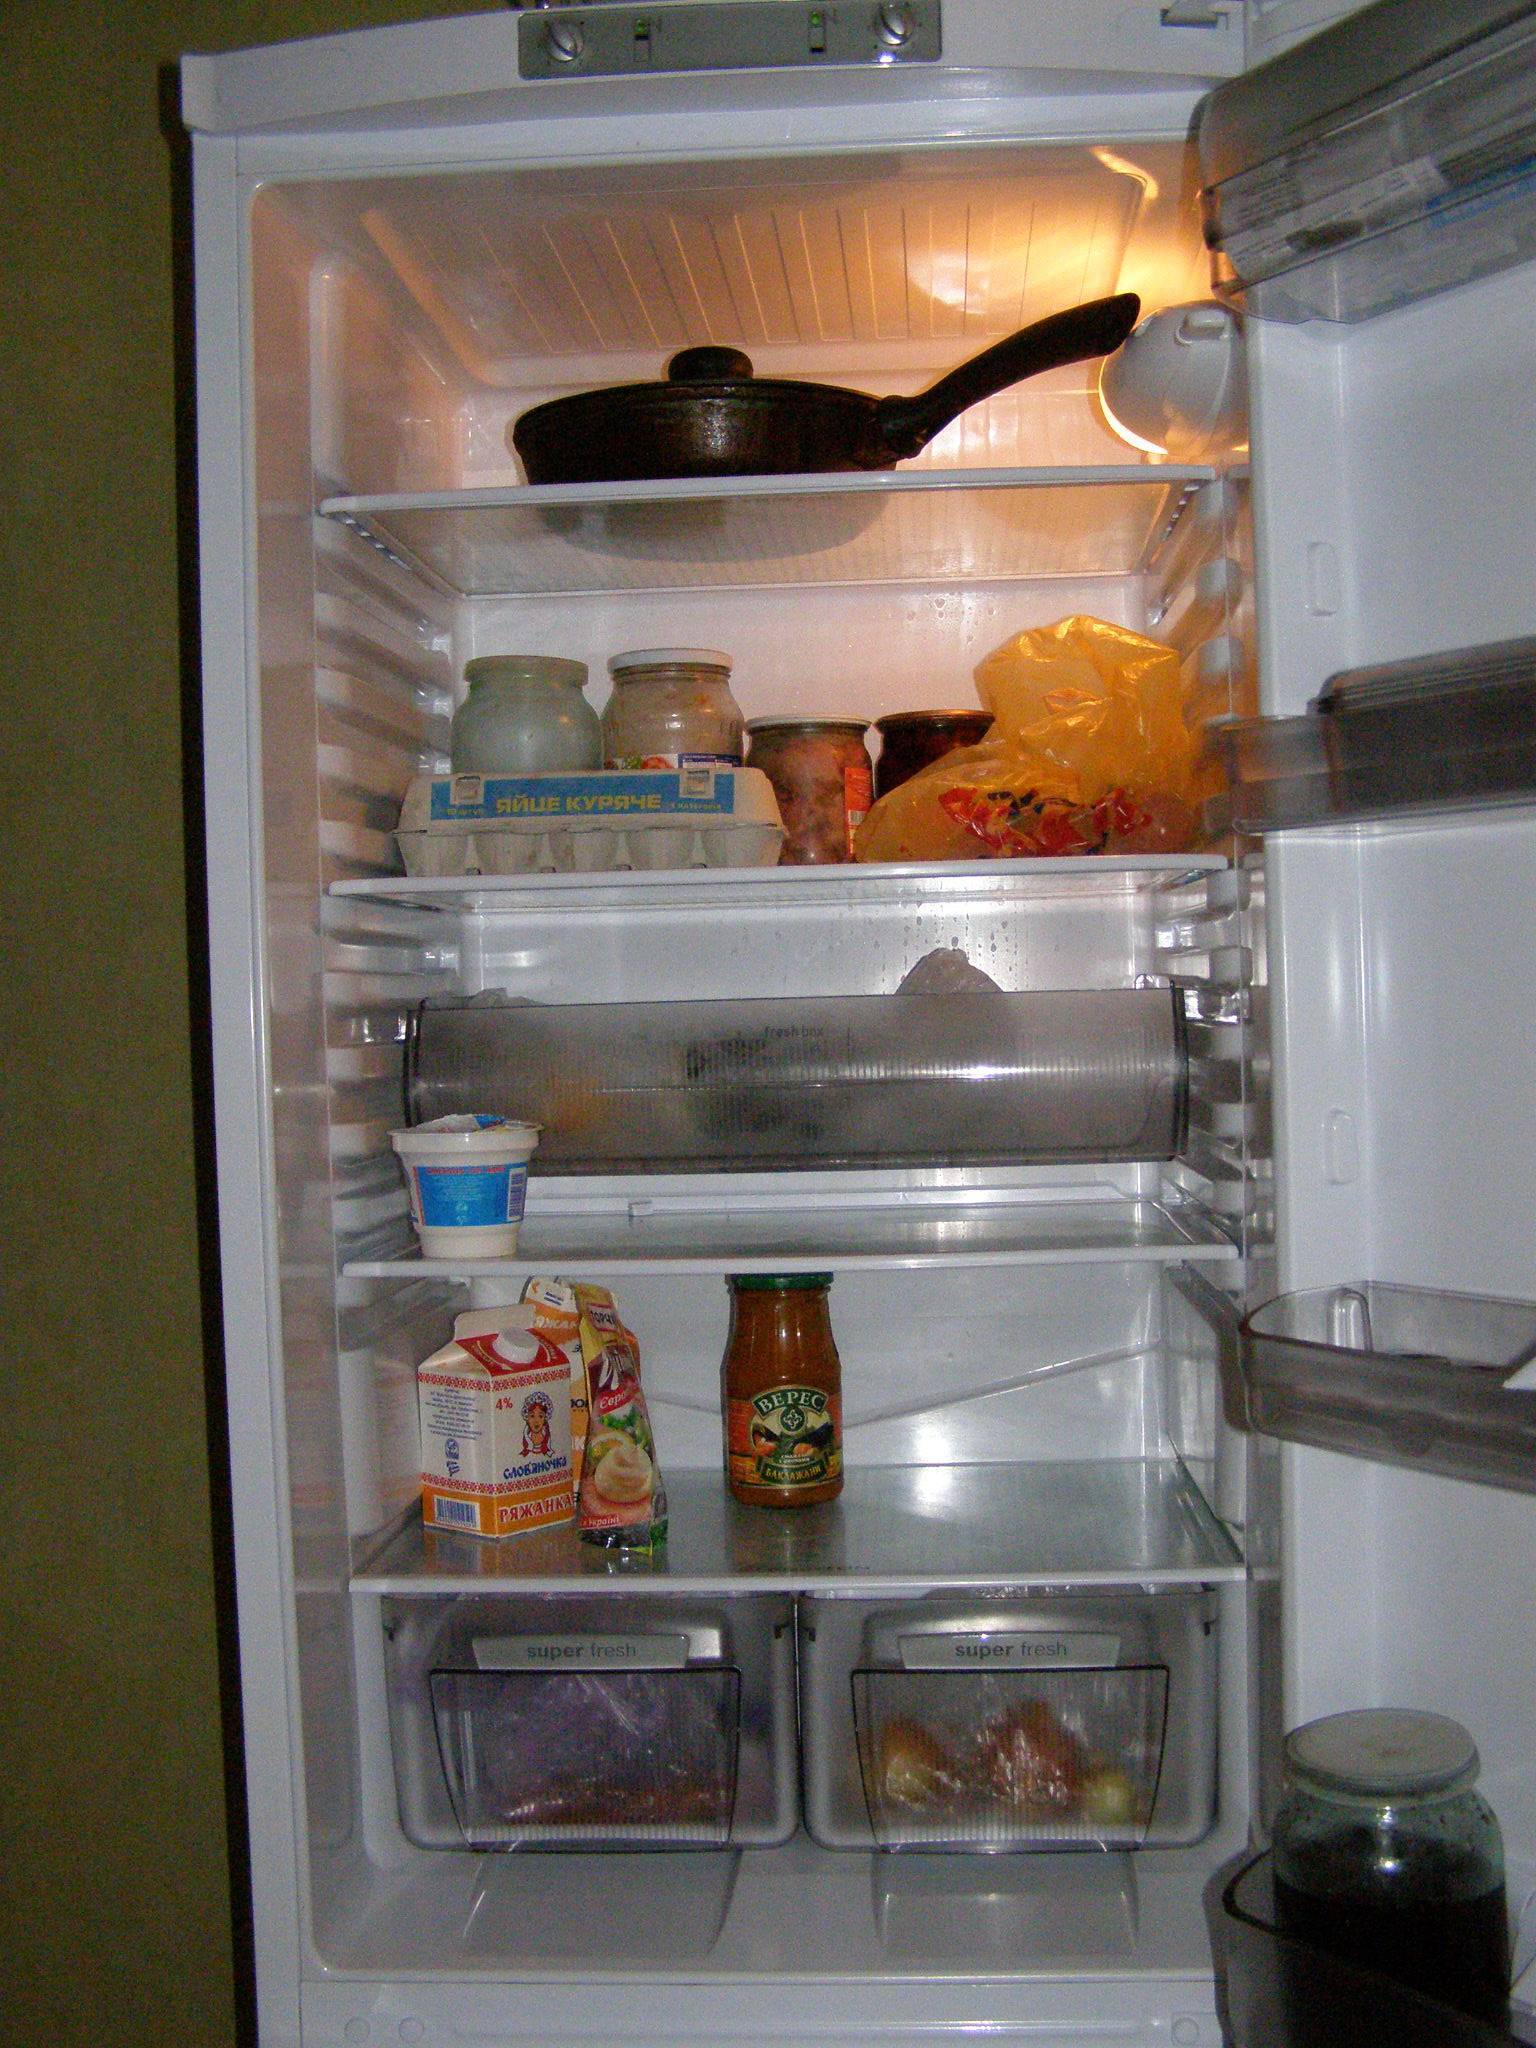 Хранение в холодильнике - что нельзя, что можно, лайфхаки